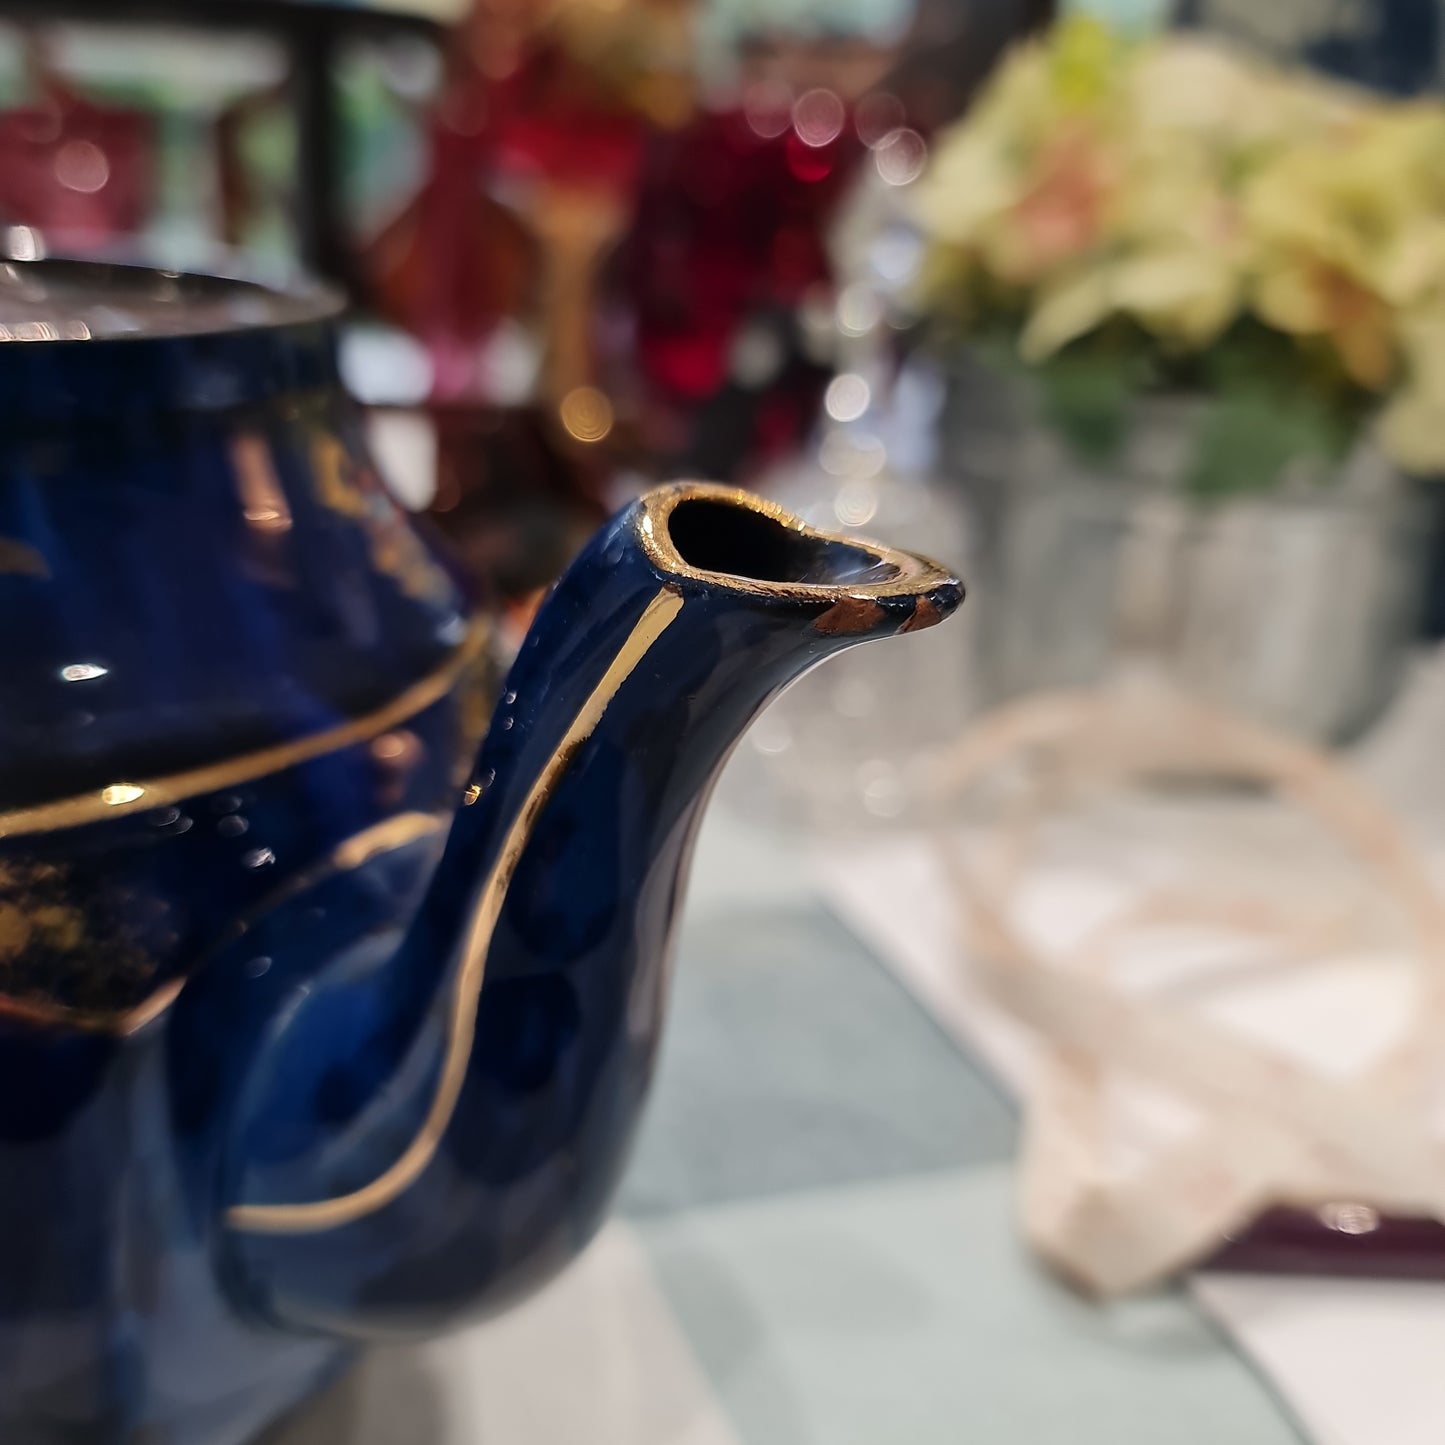 Antique Sadler handpainted teapot - minor nip on lid abd spout